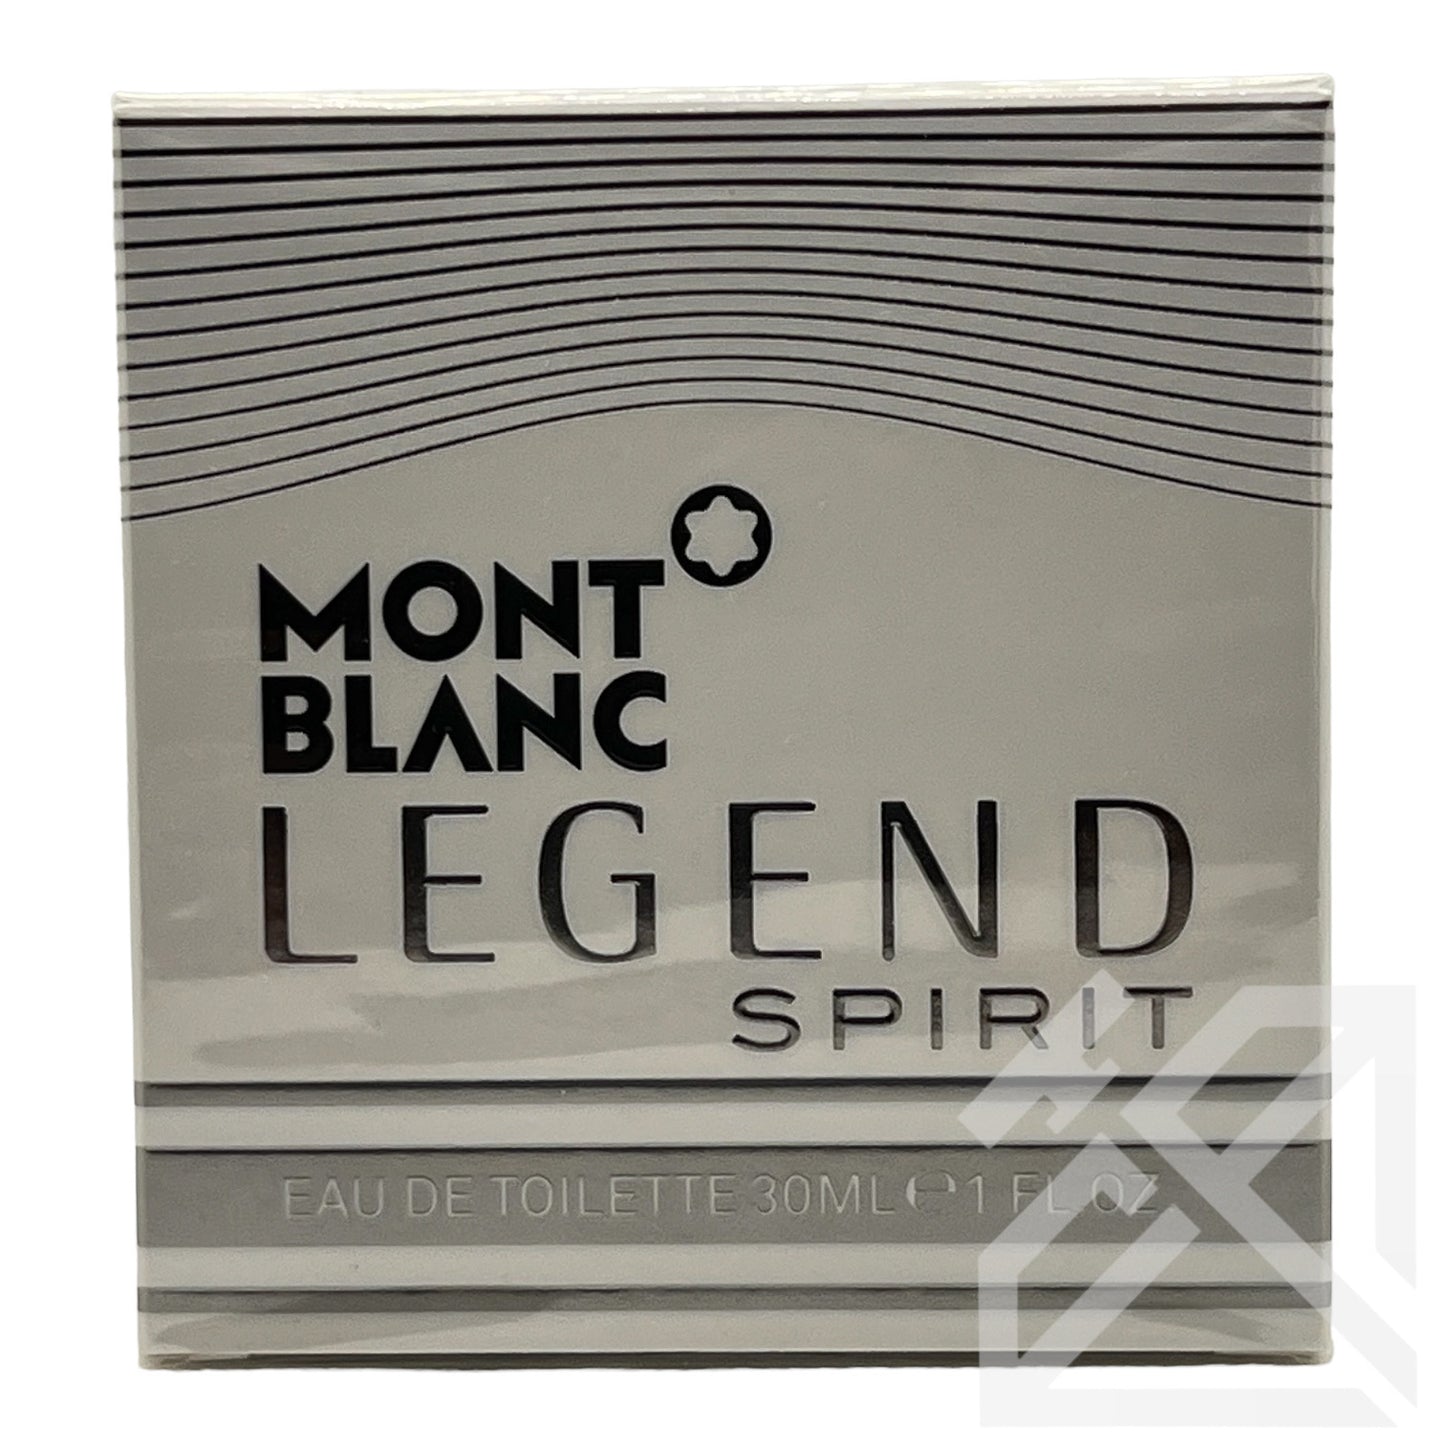 Montblanc Legend Spirit Eau de Toilette 30ml spray